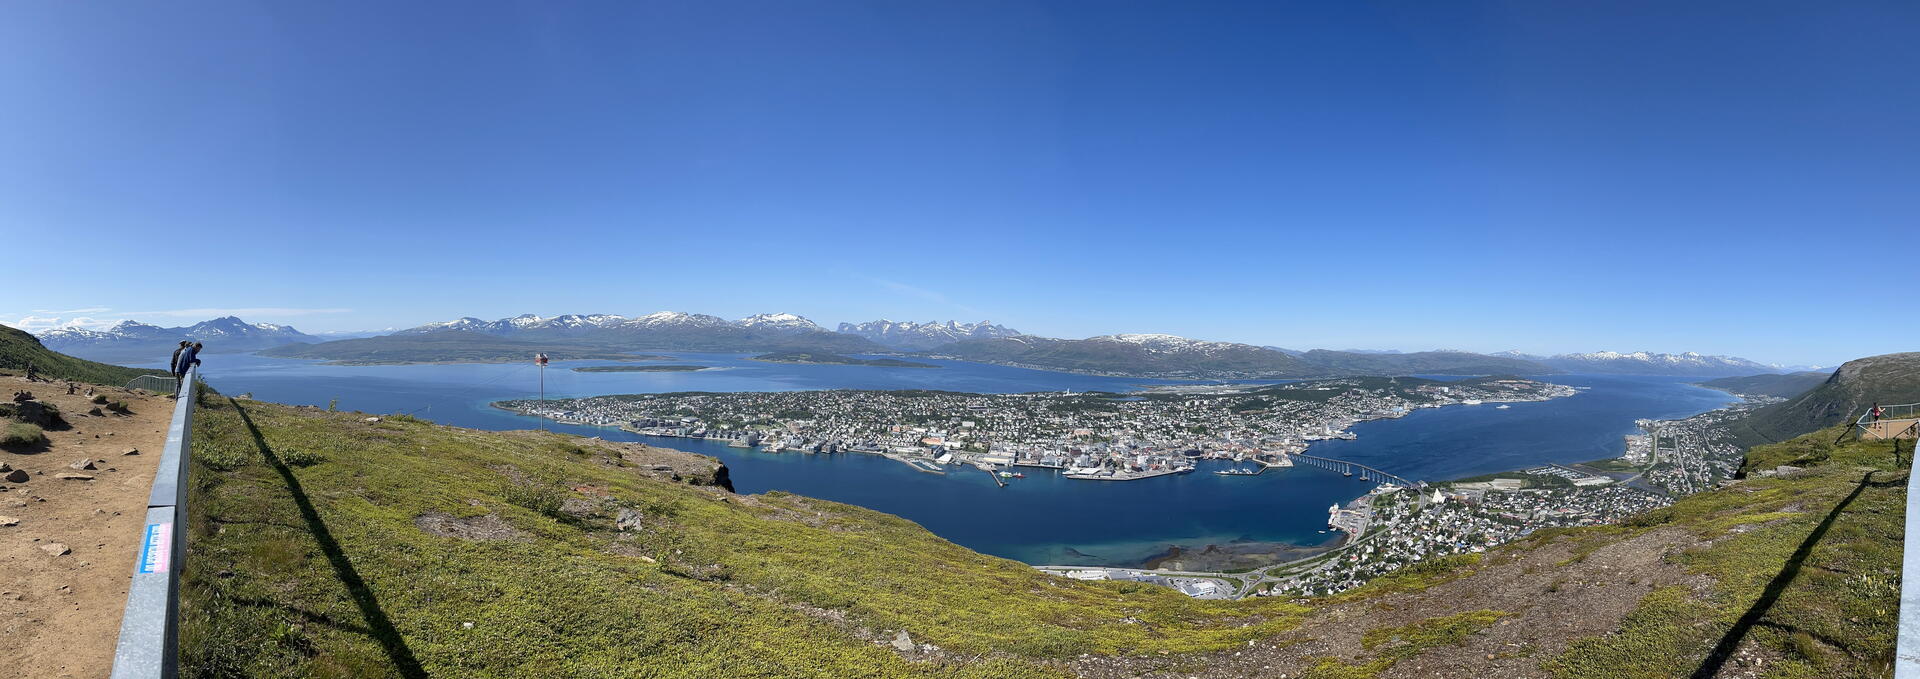 Tromso z vyhlídky, ostrov Tromsoya